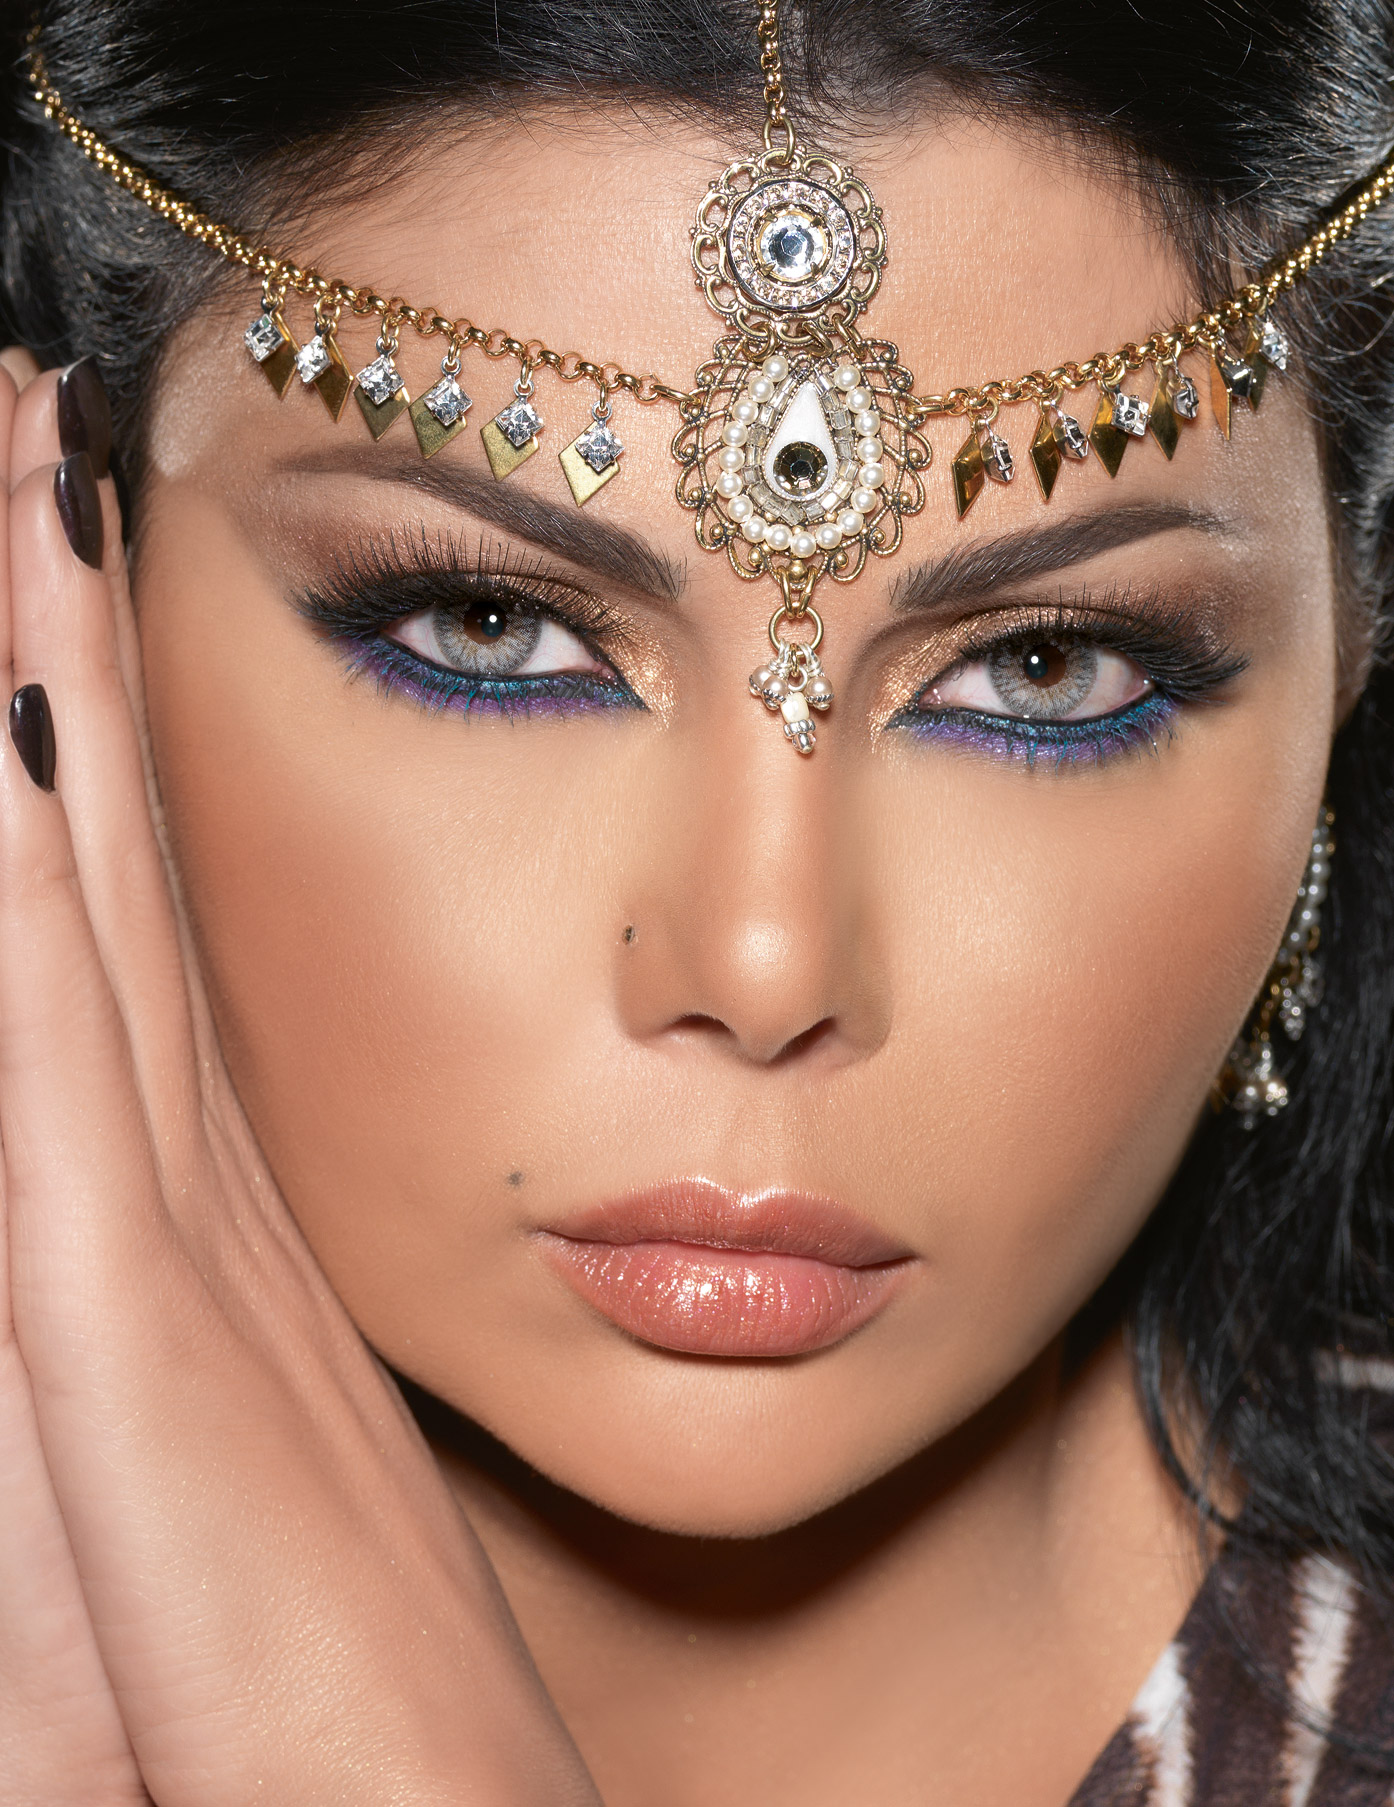 Arabic Makeup style - Get A Unique Look